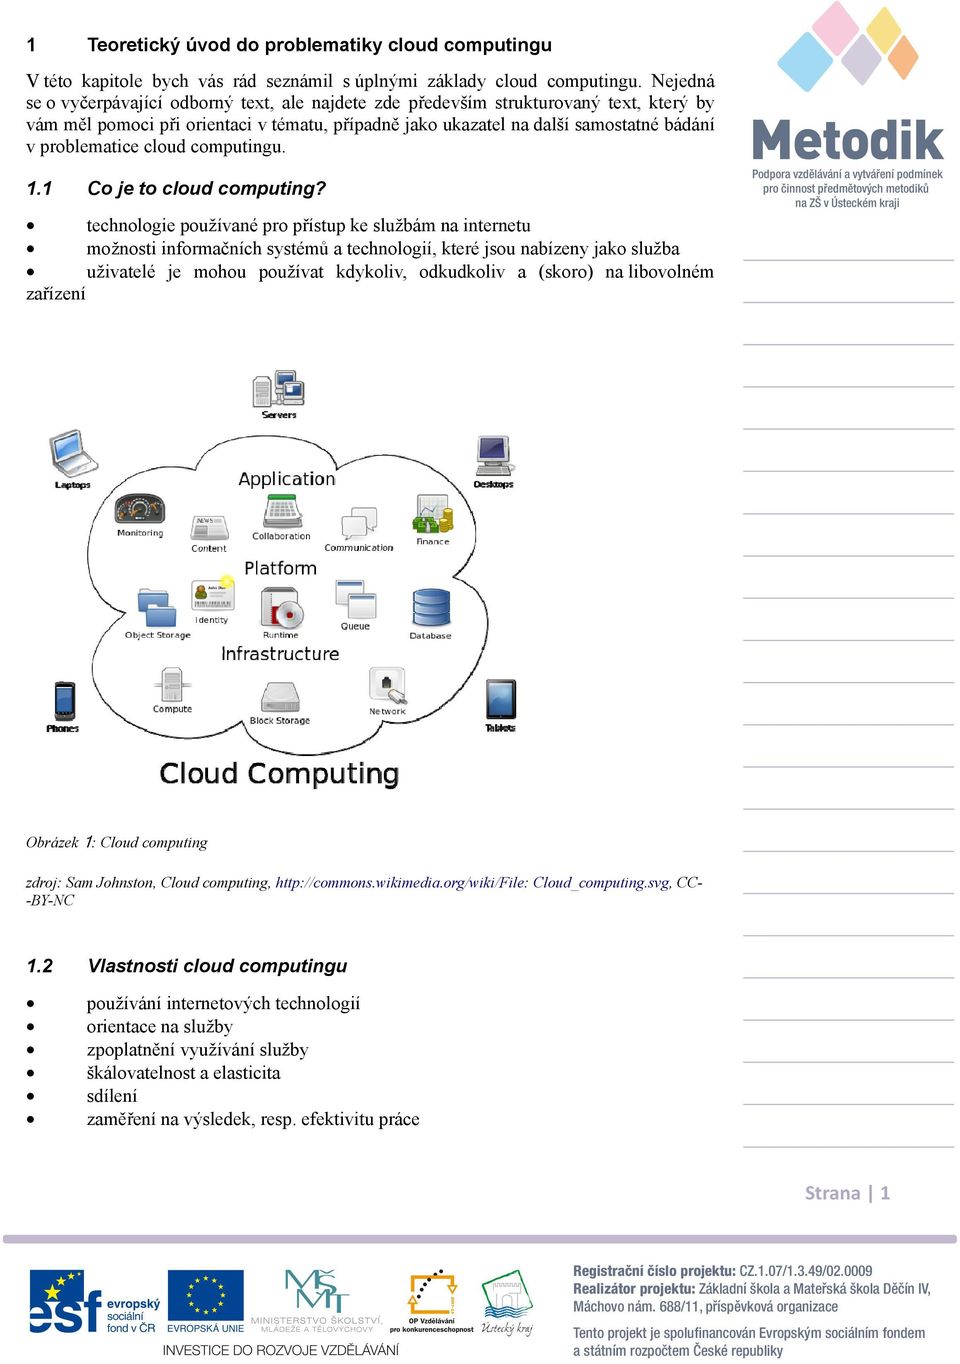 cloud computingu. 1.1 Co je to cloud computing?